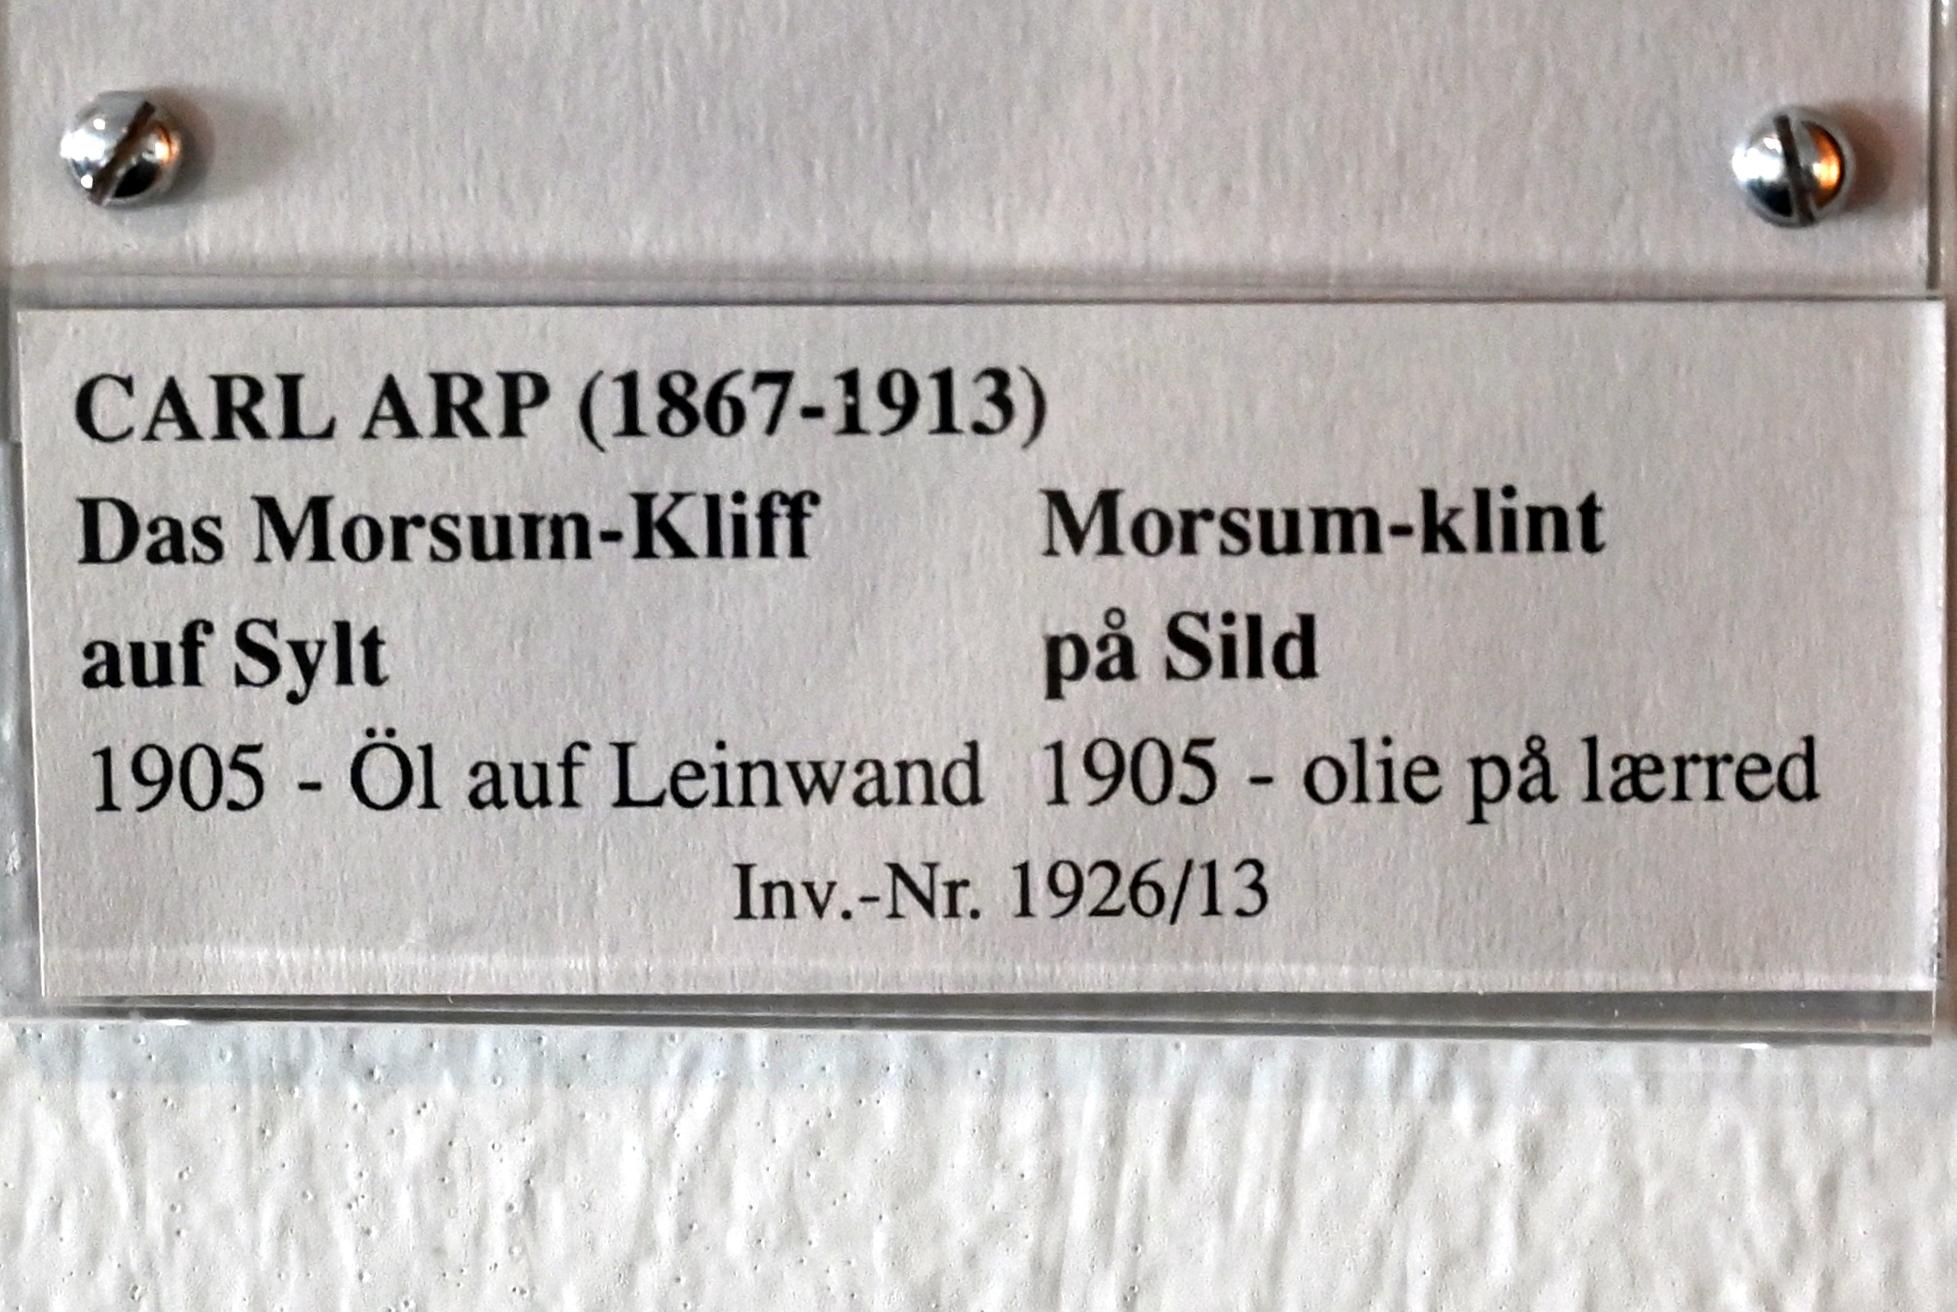 Fritz Overbeck (1905), Das Morsum-Kliff auf Sylt, Schleswig, Landesmuseum für Kunst und Kulturgeschichte, Jugendstil, 1905, Bild 2/2